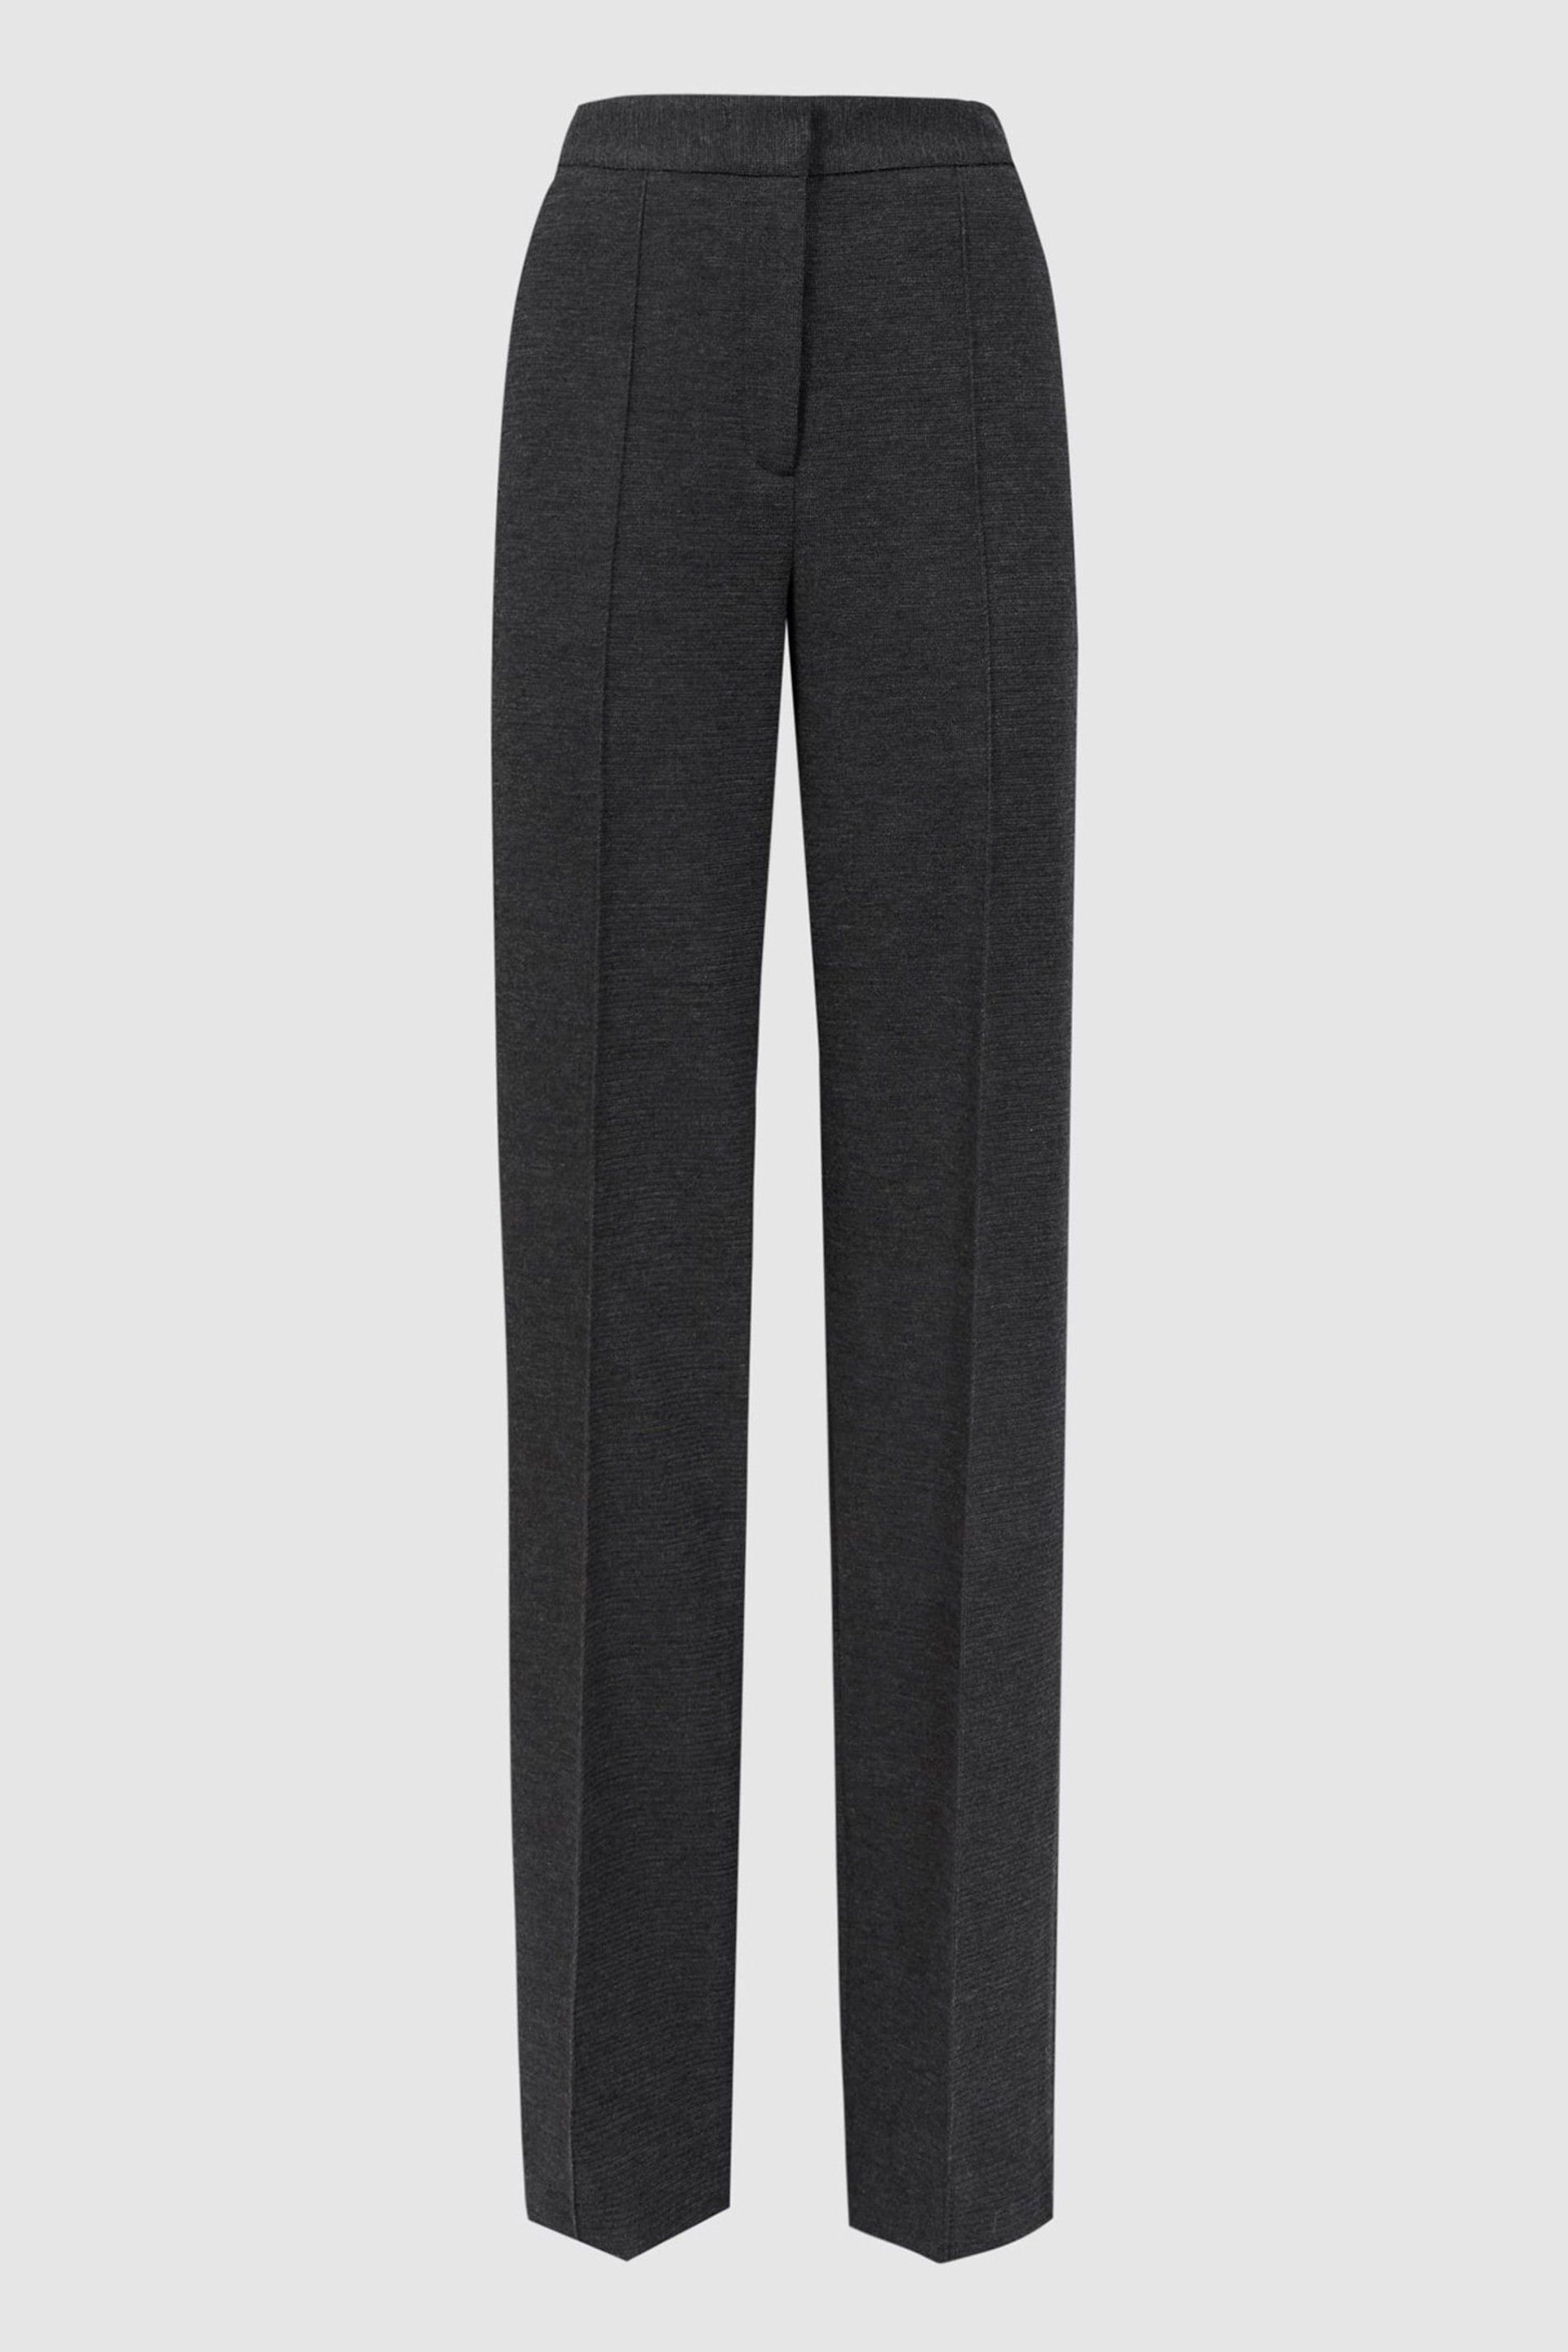 Reiss Grey Melange Iria Wool Blend Wide Leg Suit Trousers - Image 2 of 4